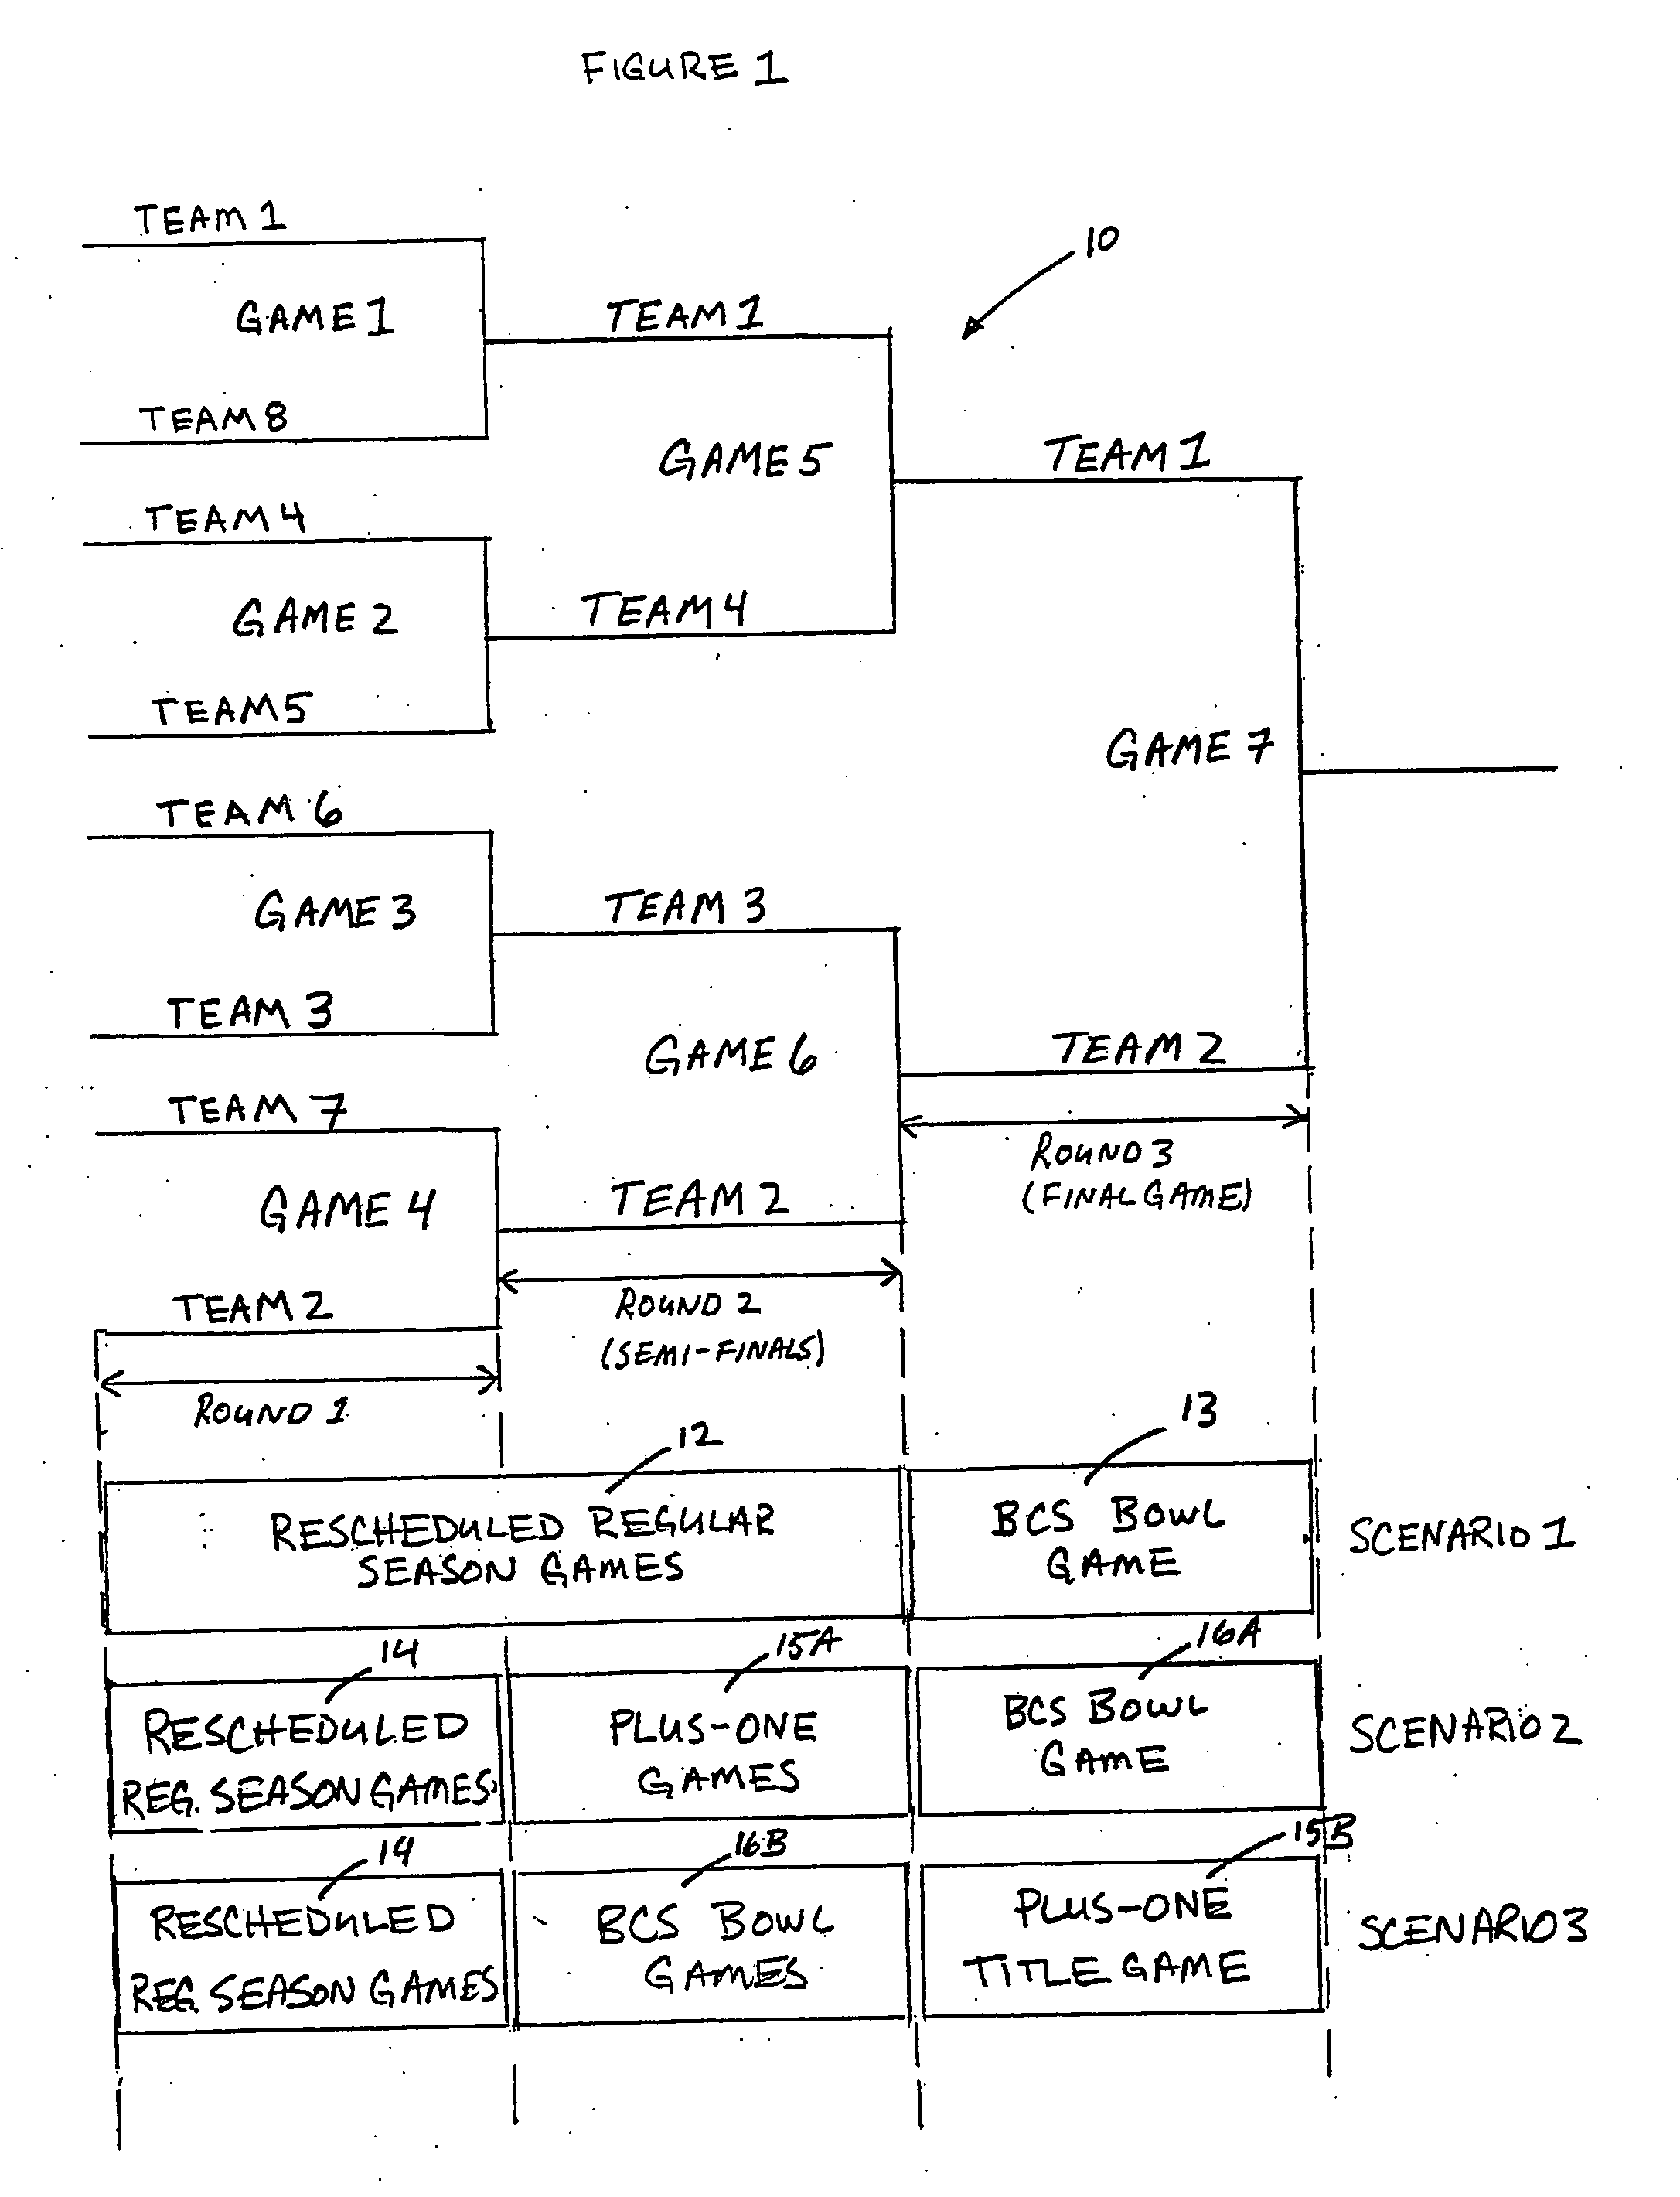 Flex schedule playoff system